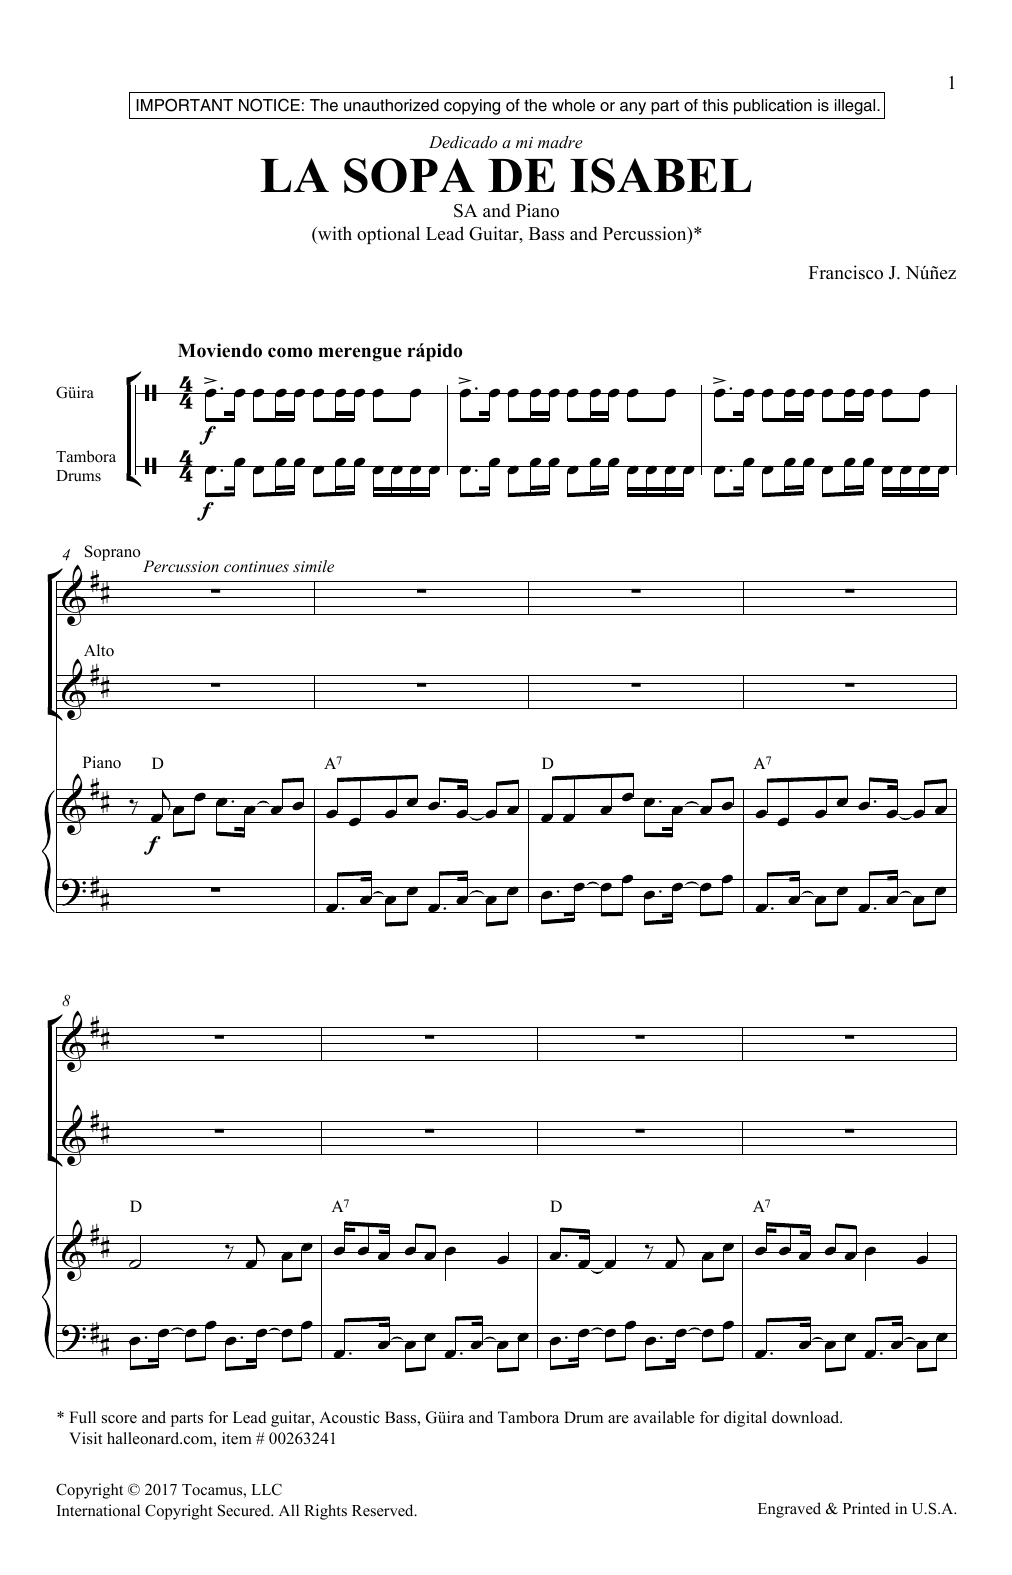 Francisco Nunez La Sopa De Isabel Sheet Music Notes & Chords for 2-Part Choir - Download or Print PDF